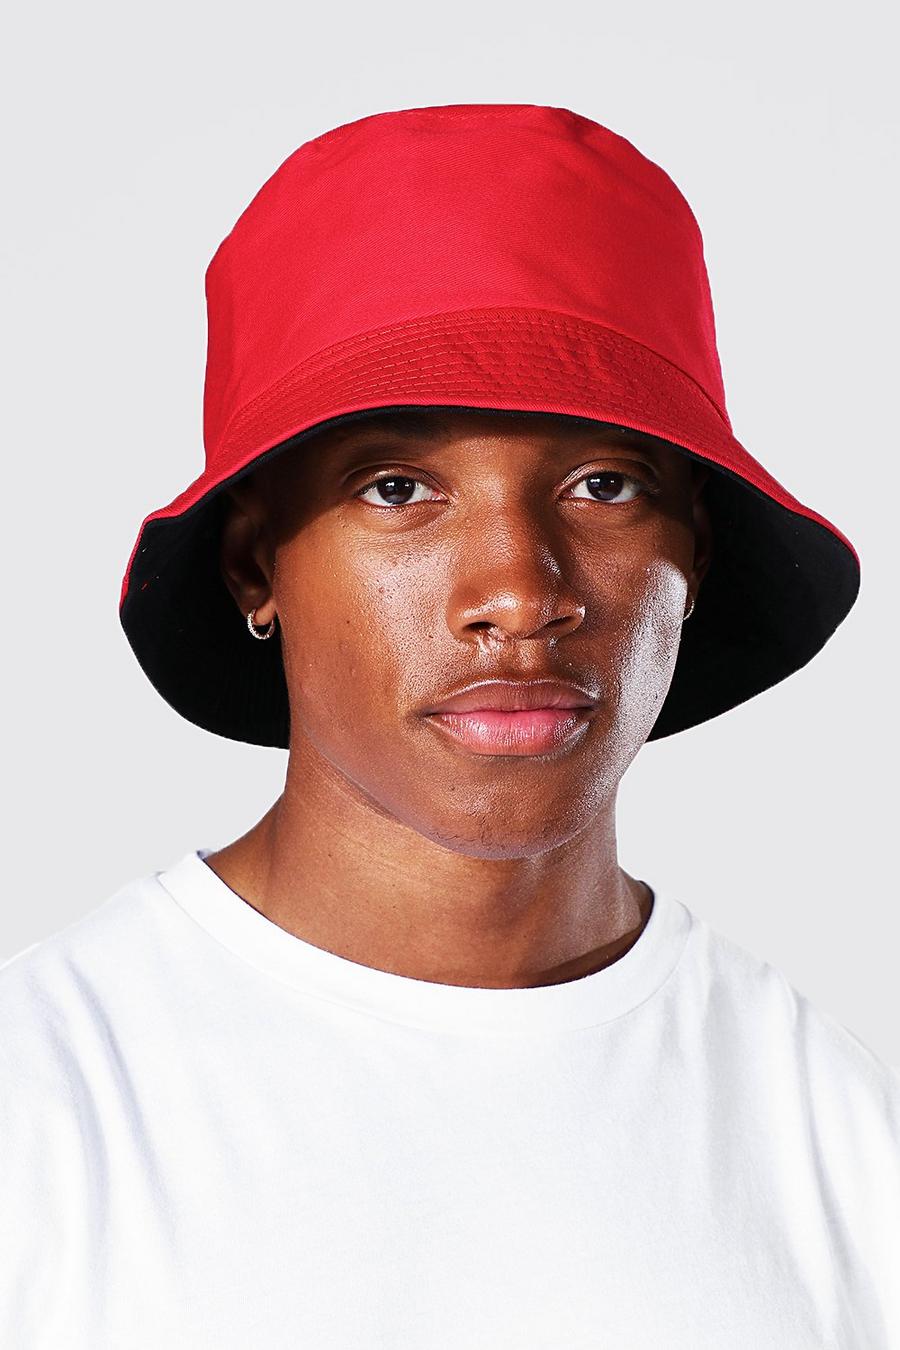 אדום red כובע טמבל דו-צדדי